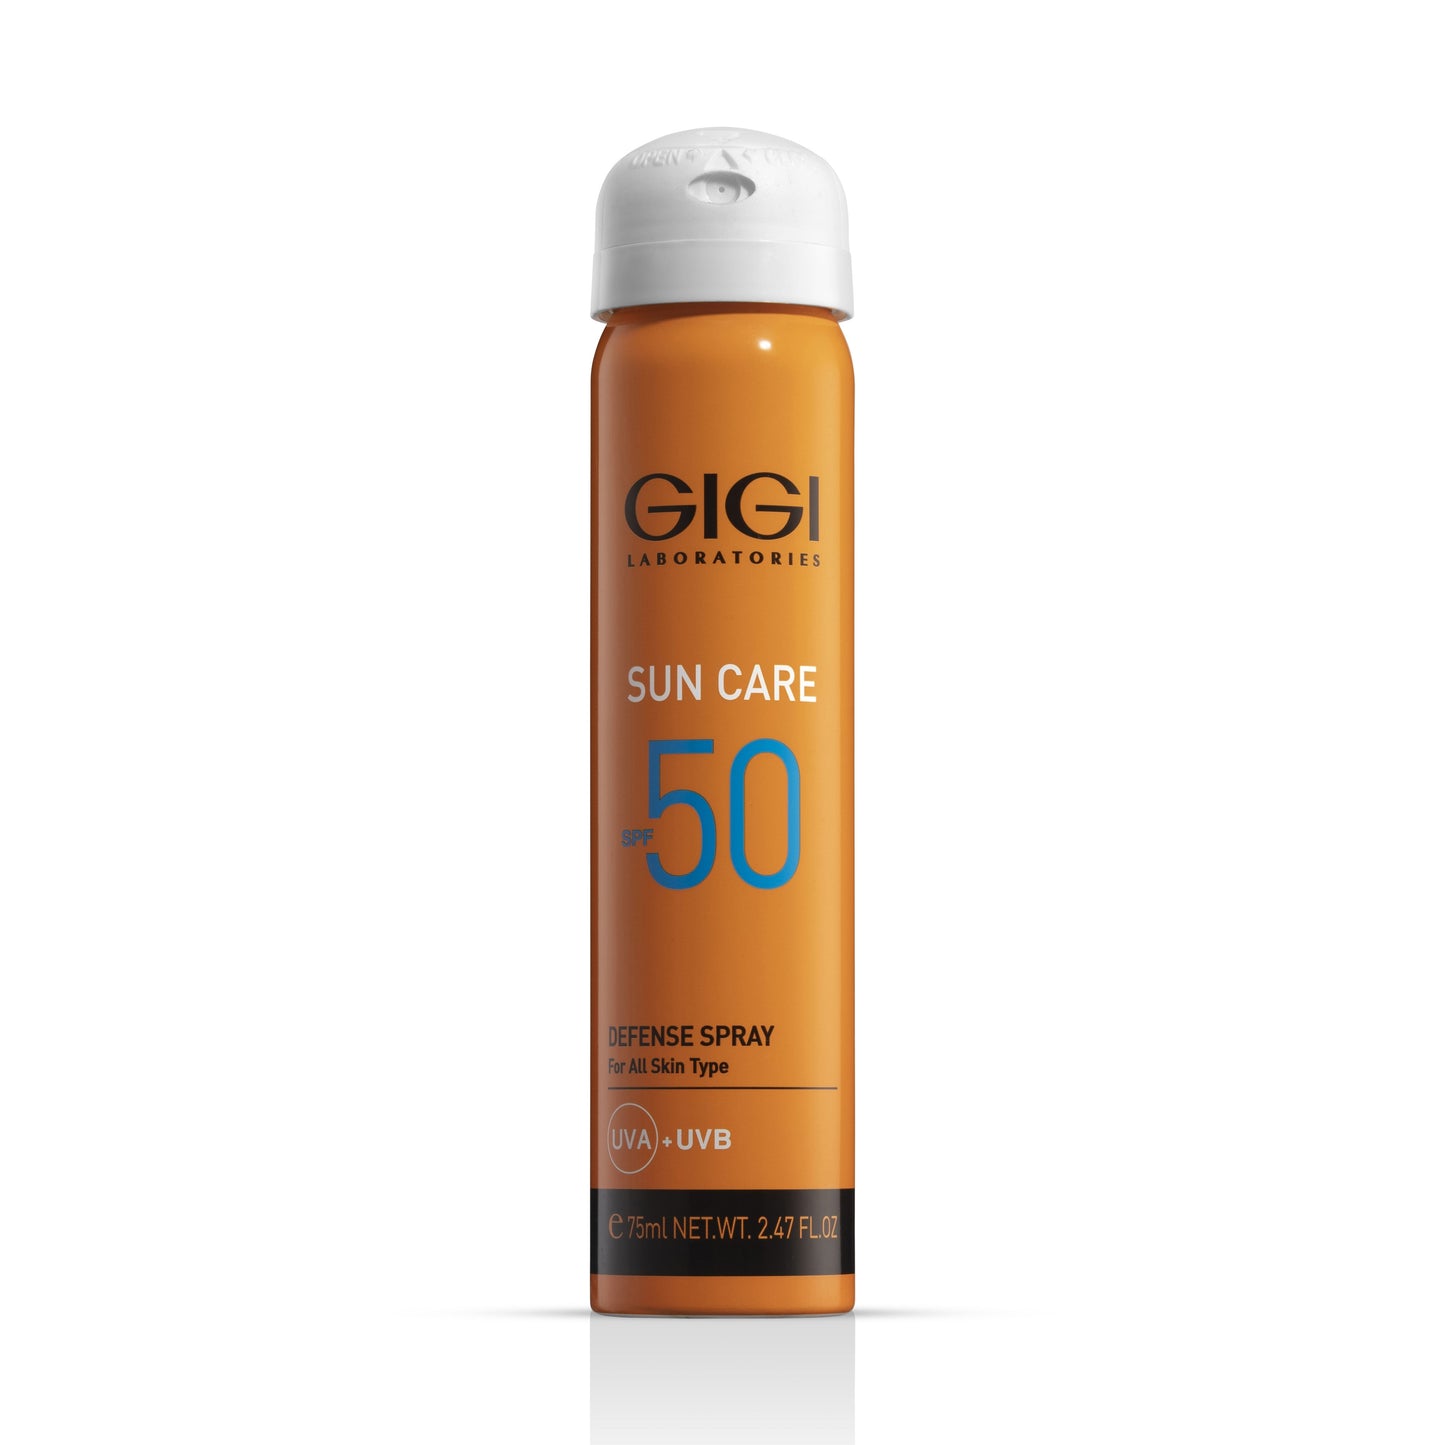 Sun Care SPF 50 Spray 75ml